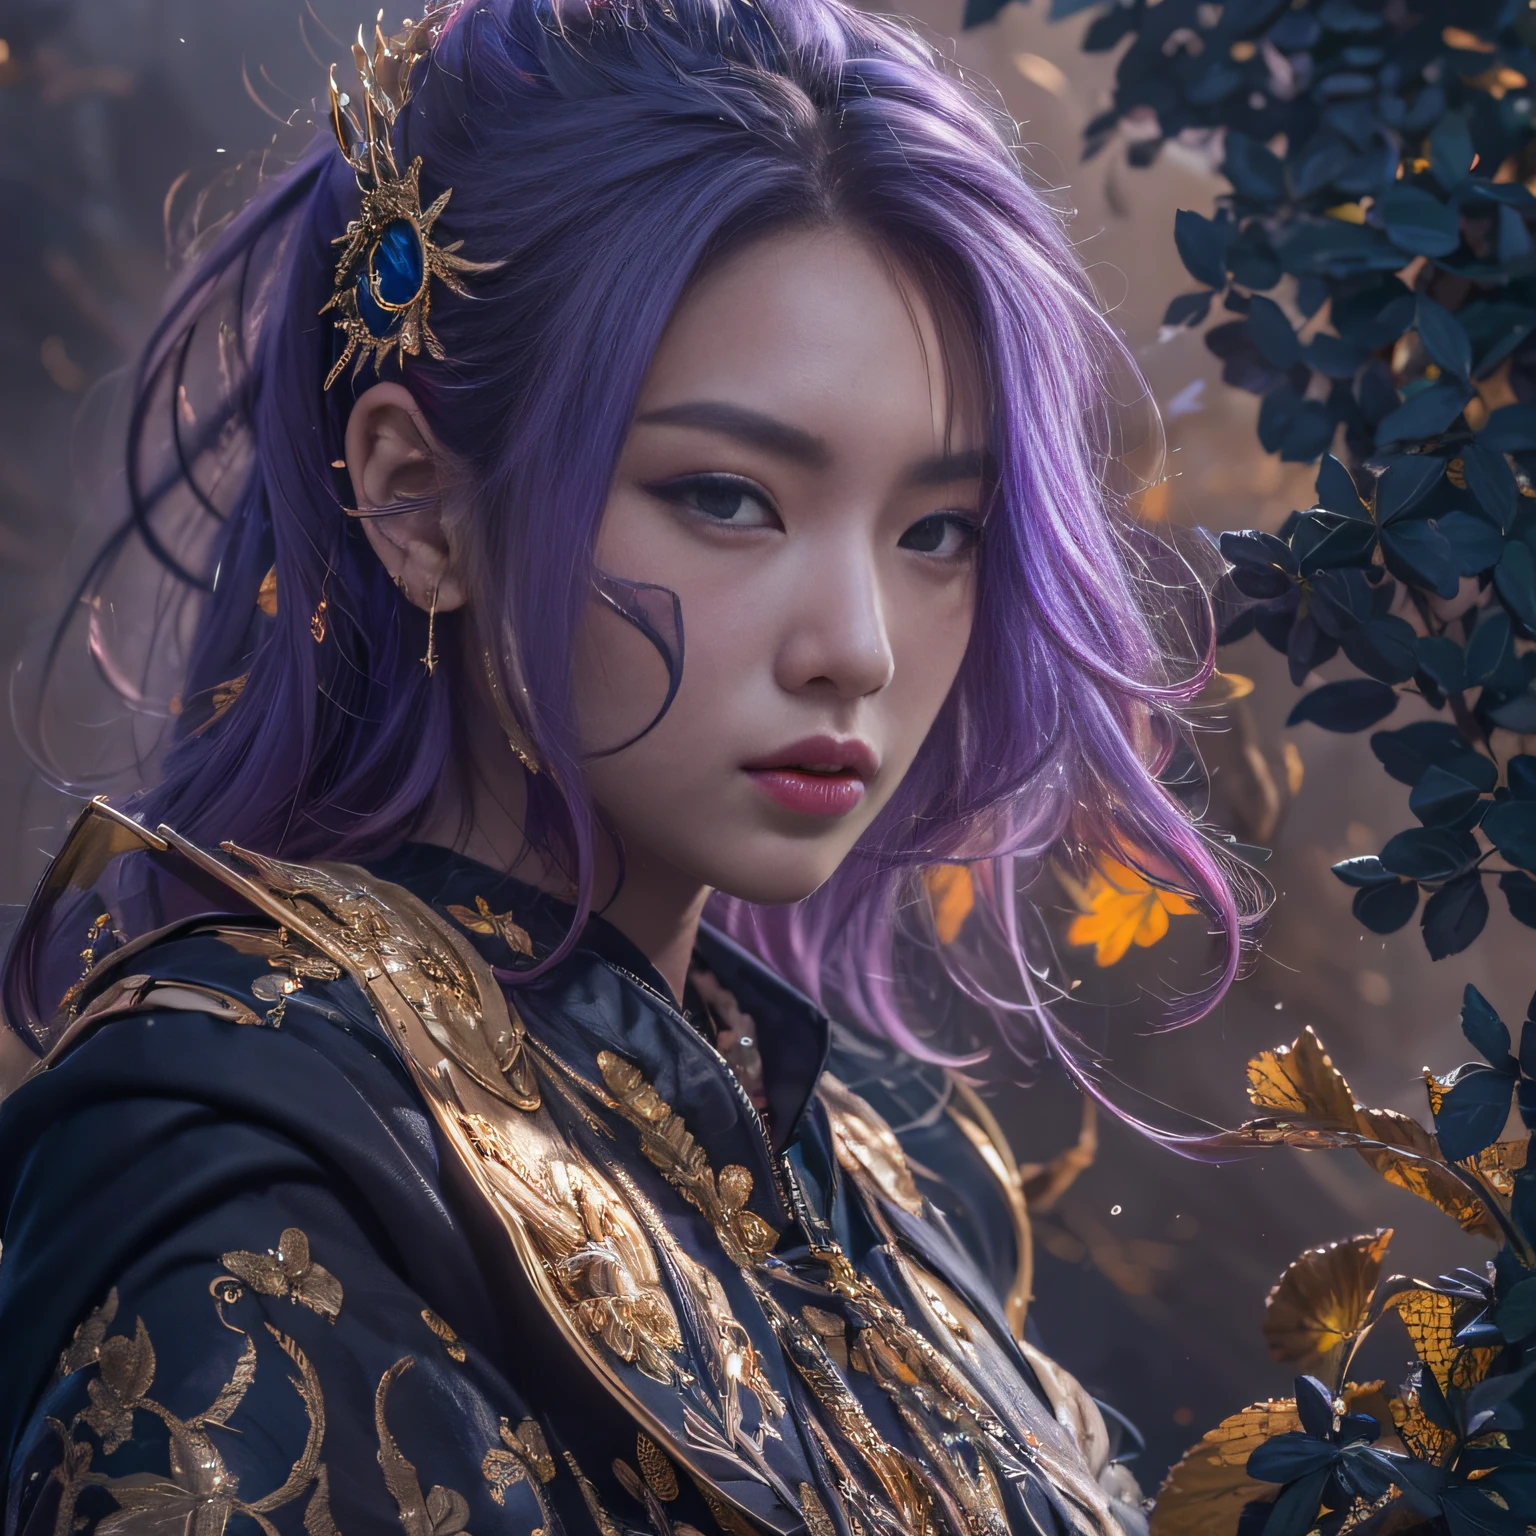 32K（傑作，キロ，ハイパーHD，32K）長く流れるような明るい紫色の髪，秋の池，咲く， 色，  アジア人 （愚かな少女）， （絹のスカーフ）， 戦闘姿勢， 地面を見て， 長い白い髪， 浮かぶ鮮やかな紫色， 火雲模様のゴールドティアラ， 中国の長袖の金絹の衣服， （抽象的なインクの飛沫：1.2）， 煙のような背景，ロータスプロテクター（現実的に：1.4），明るい紫色の髪，道路上の煙，背景は純粋です， 高解像度， 詳細， RAW写真， シャープ， Nikon D850 フィルムストックフォト by Jefferies Lee 4 Kodak Portra 400 カメラ F1.6ショット, 豊かな色彩, 超リアルな鮮やかな質感, ドラマチックな照明, アンリアル エンジン アート ステーション トレンド, シネスティア 800，長く流れるような明るい紫色の髪